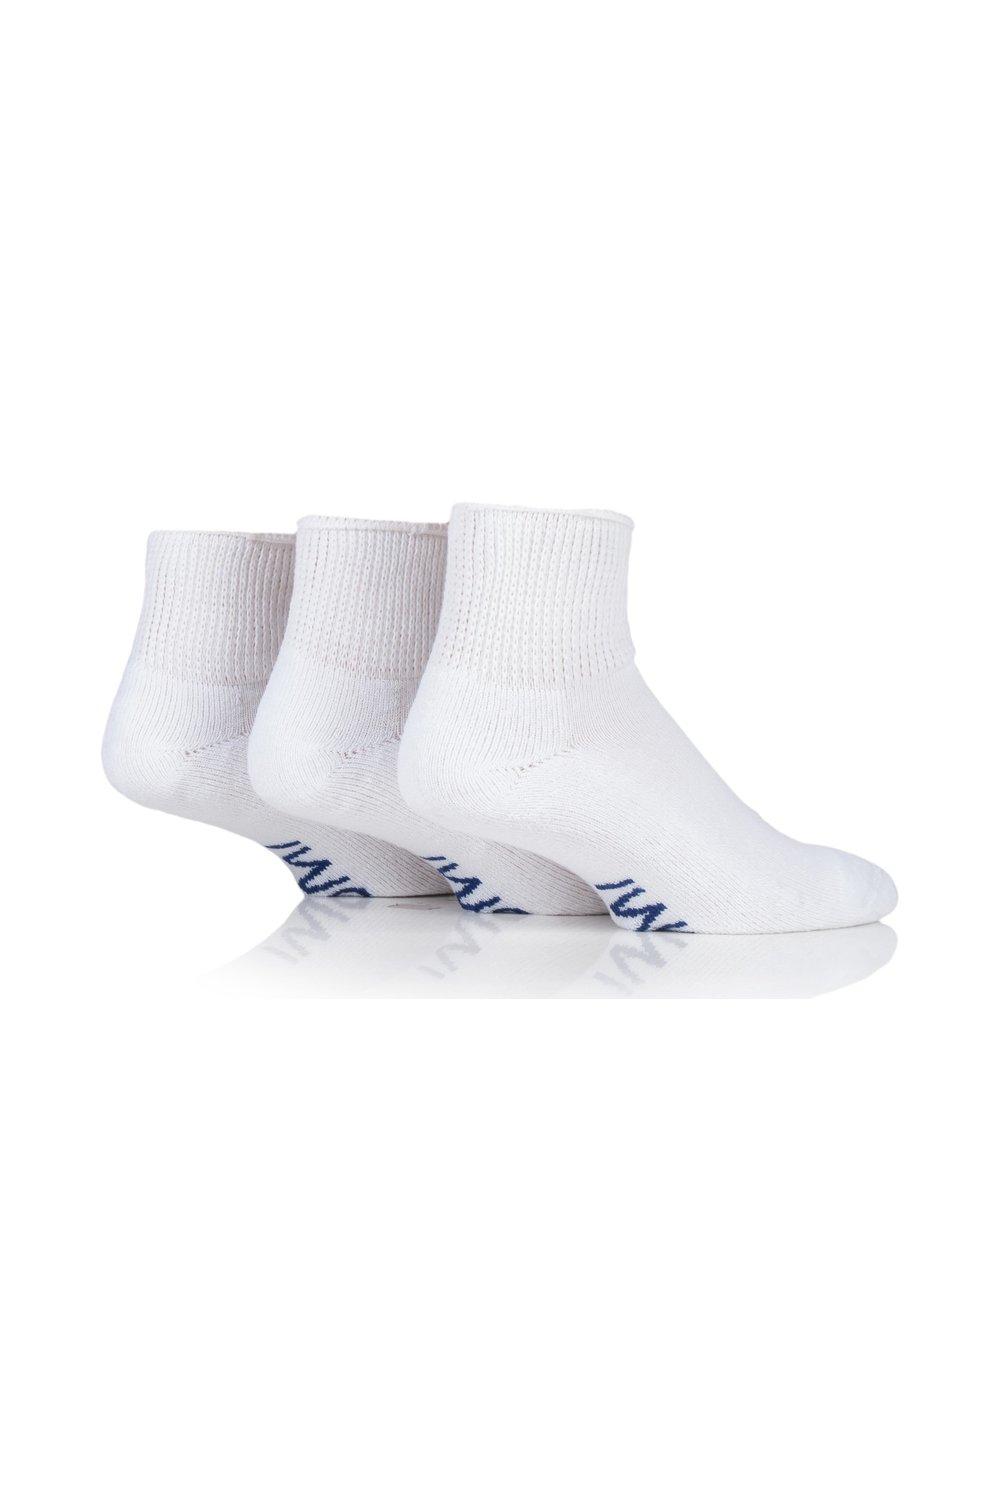 3 Pair Footnurse Cushioned Foot Gentle Grip Diabetic Ankle Socks